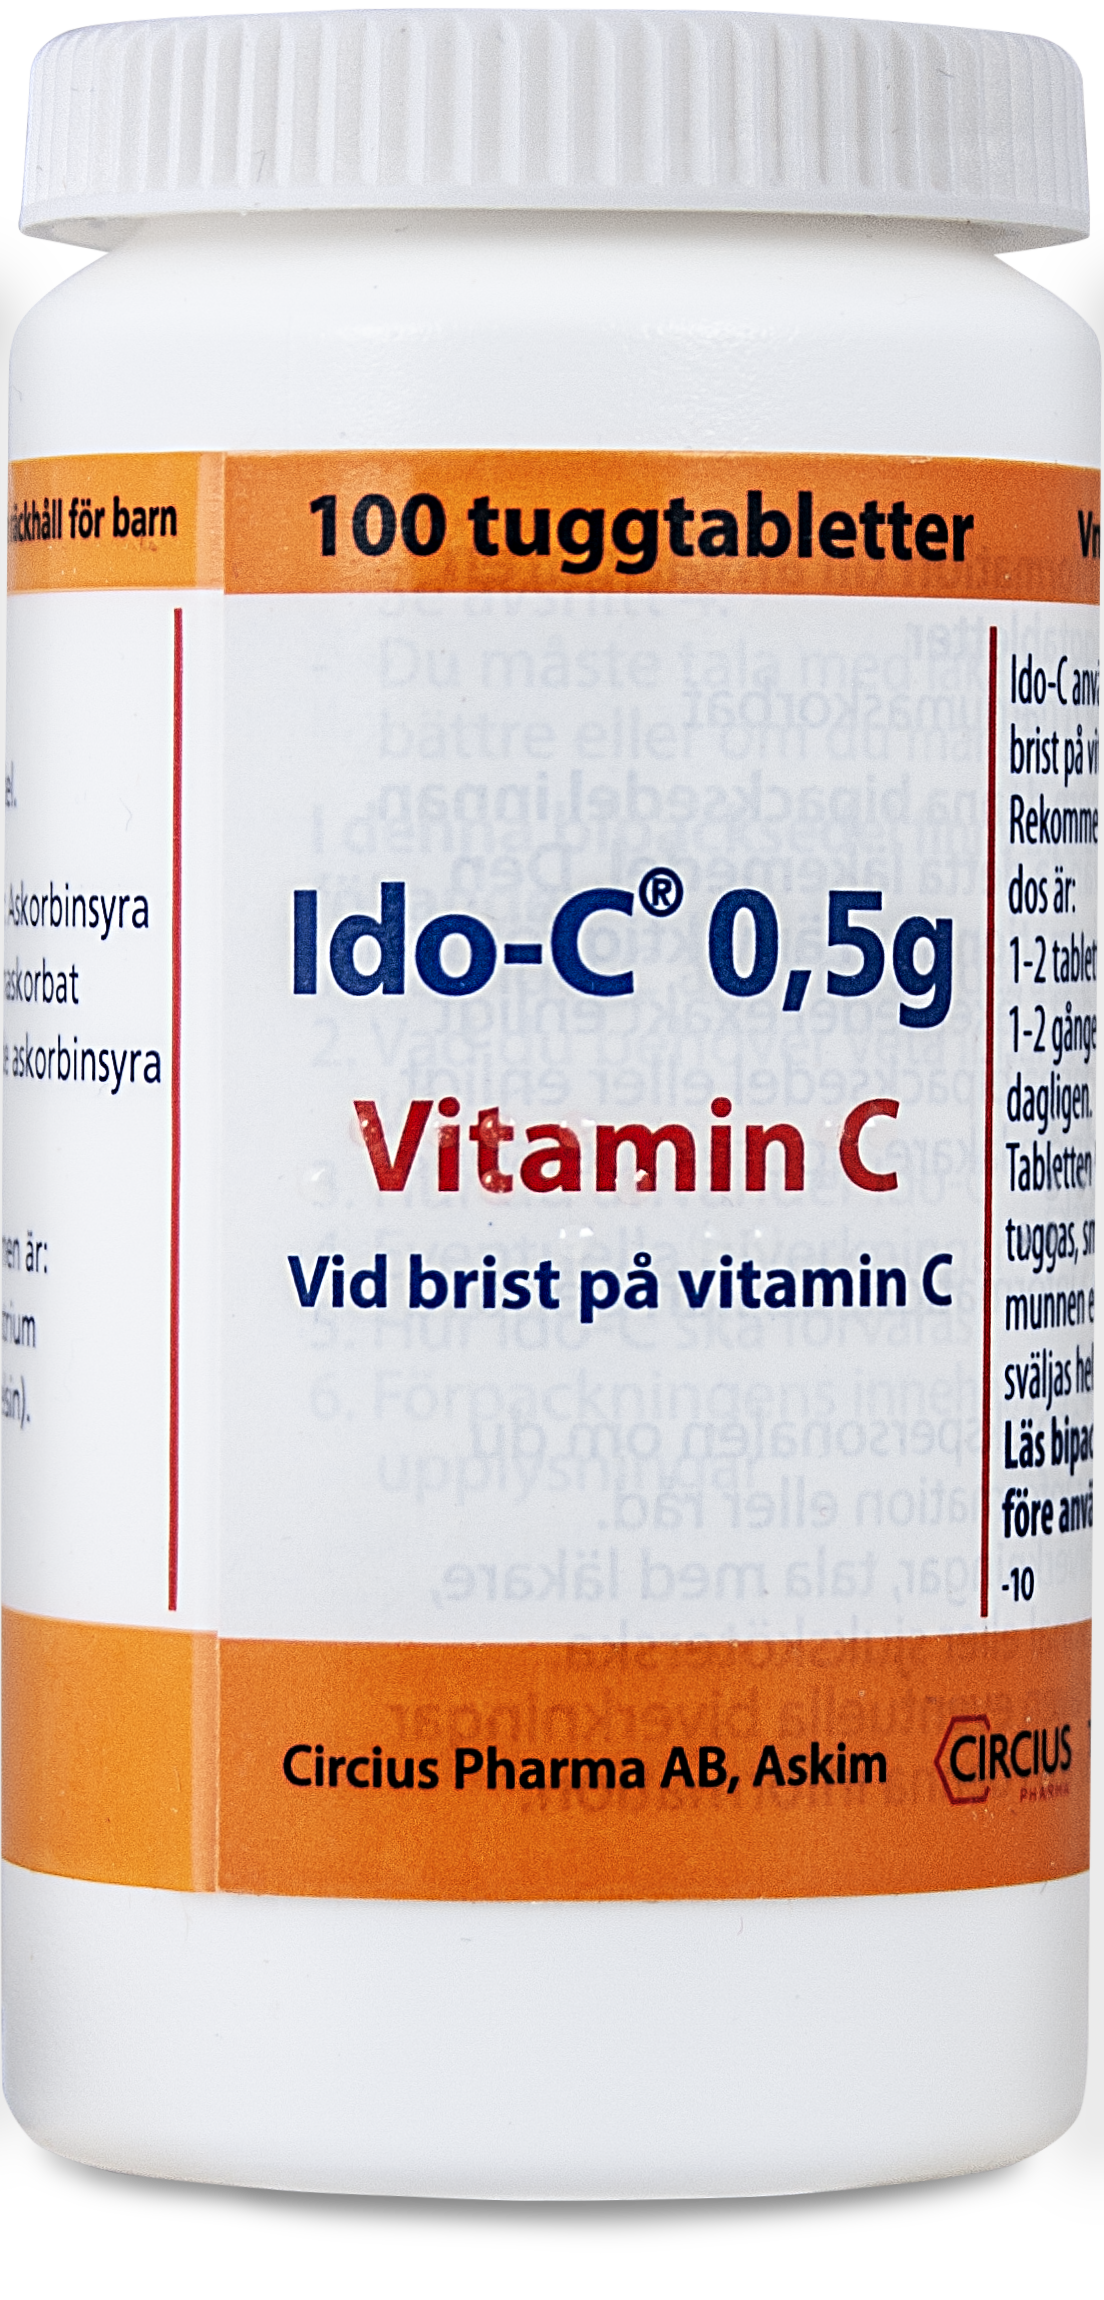 Ido-C 0,5 g Vitamin C 100 tuggtabletter